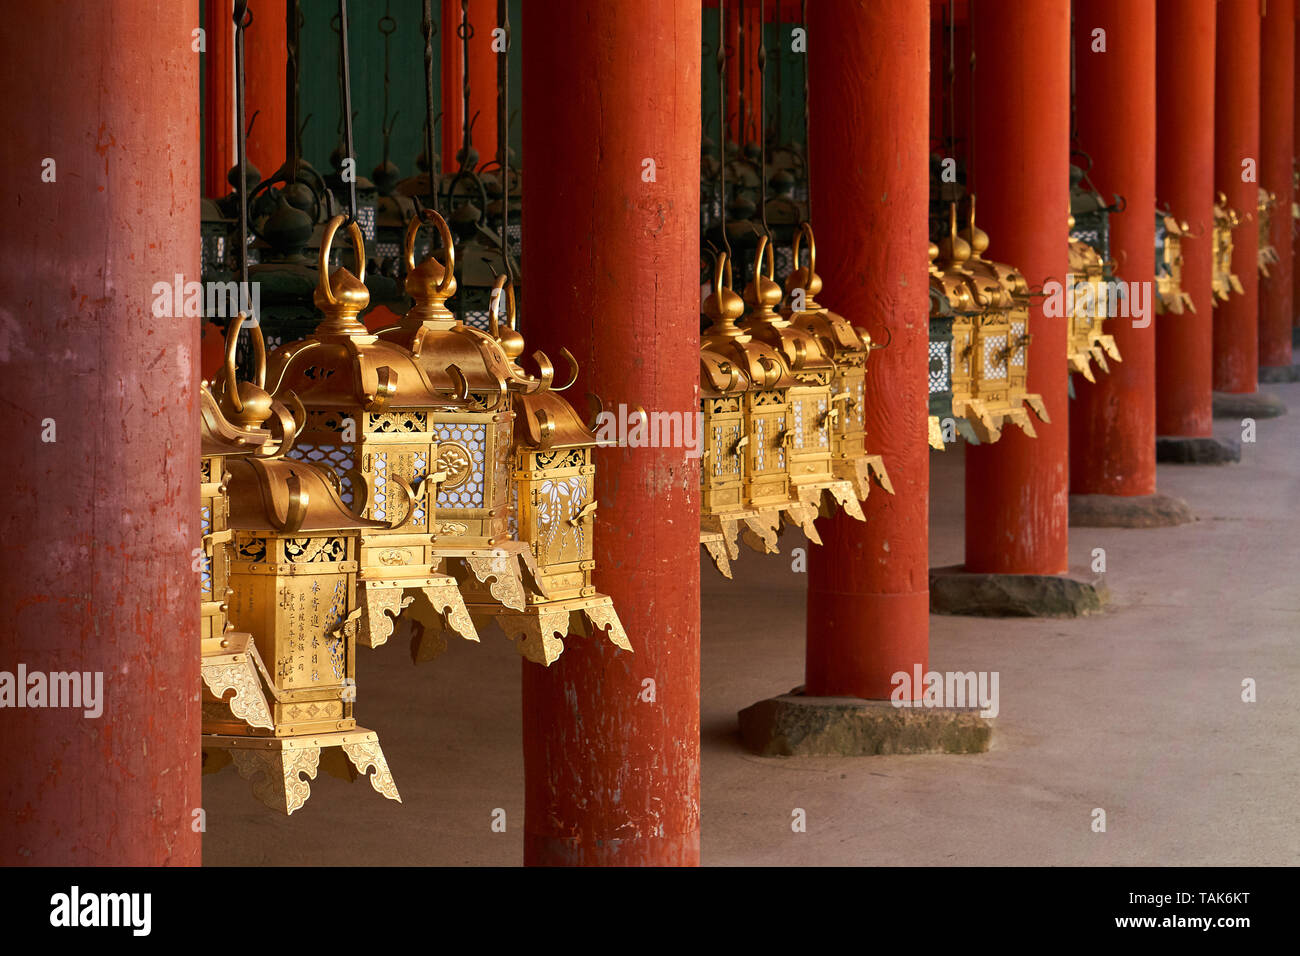 Traditional gold colored metal Japanese lanterns hang between wooden vermilion columns at Kasuga Taisha Grand Shrine in Nara, Japan. Stock Photo